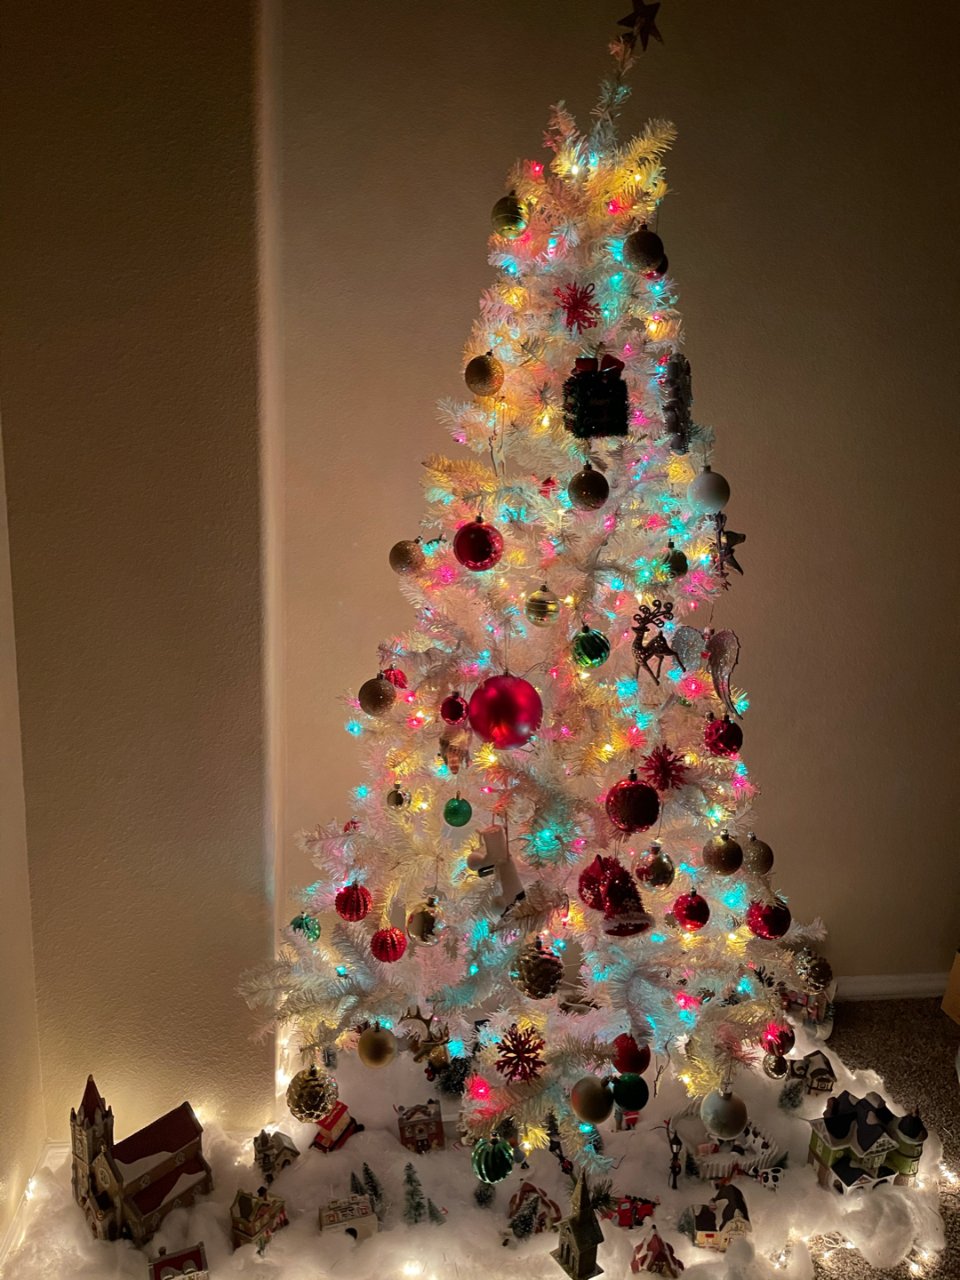 好看又可爱的圣诞树...